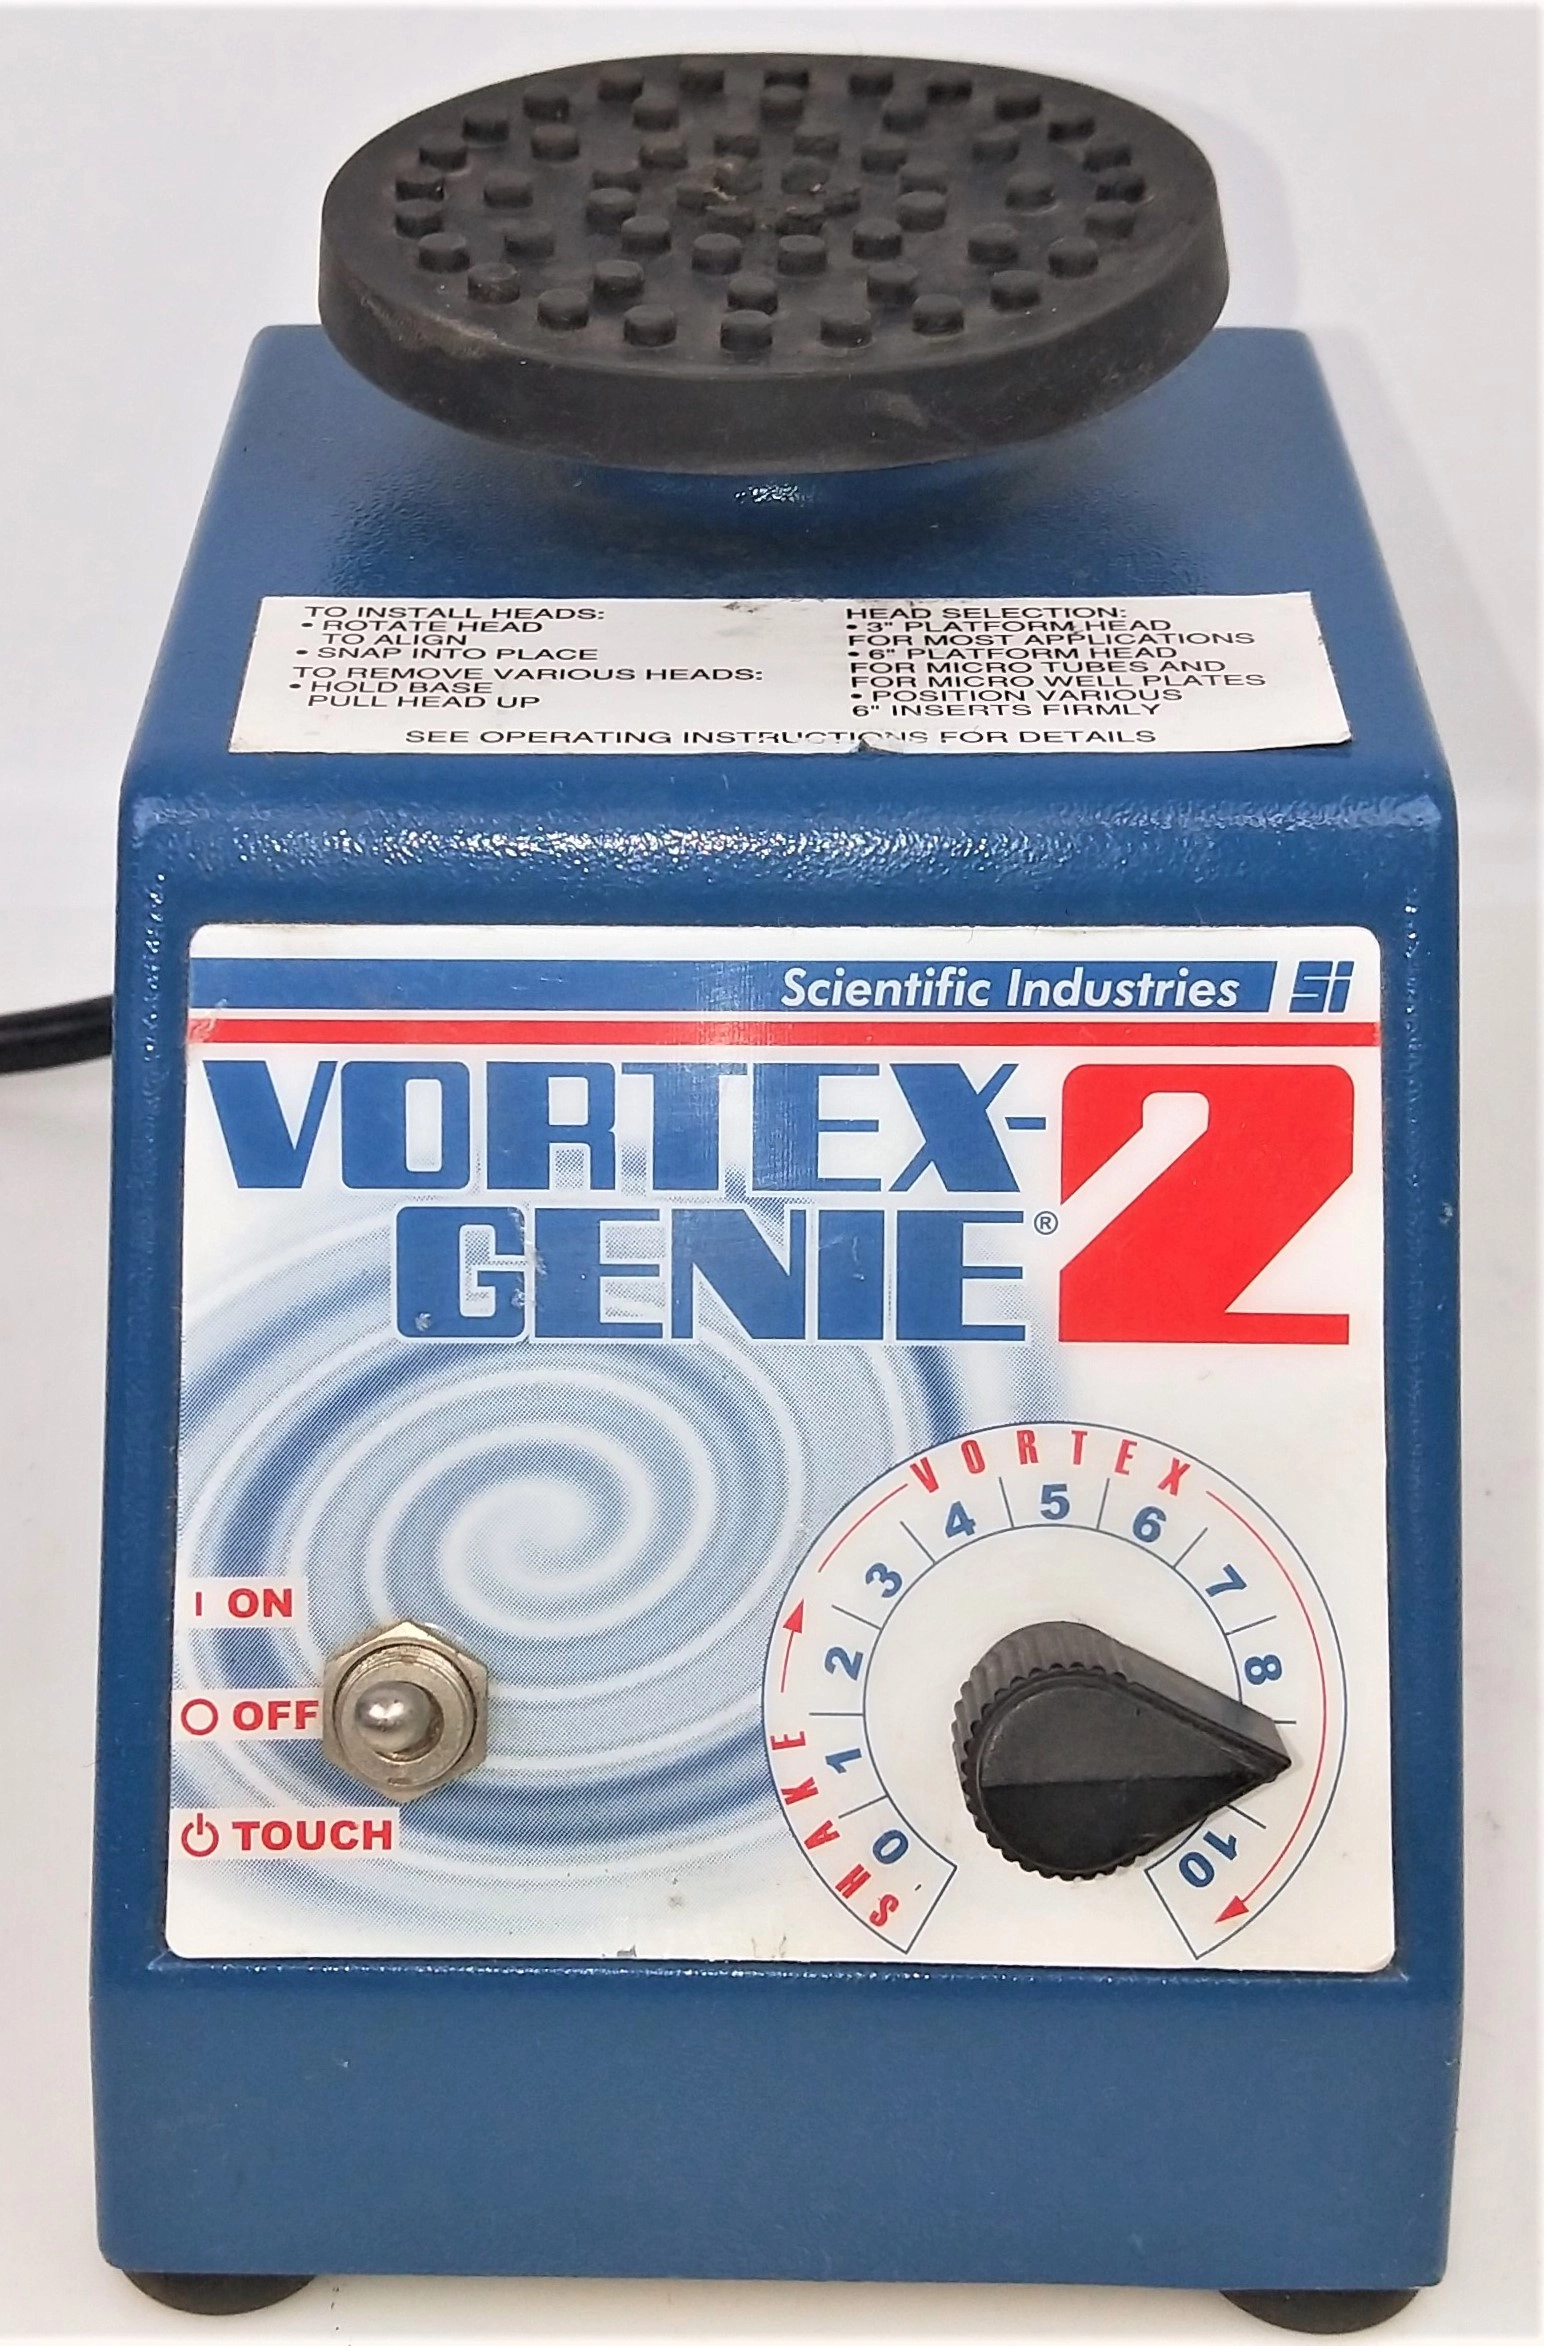 Scientific Industries Vortex Genie 2 G-560 Vortex Mixer